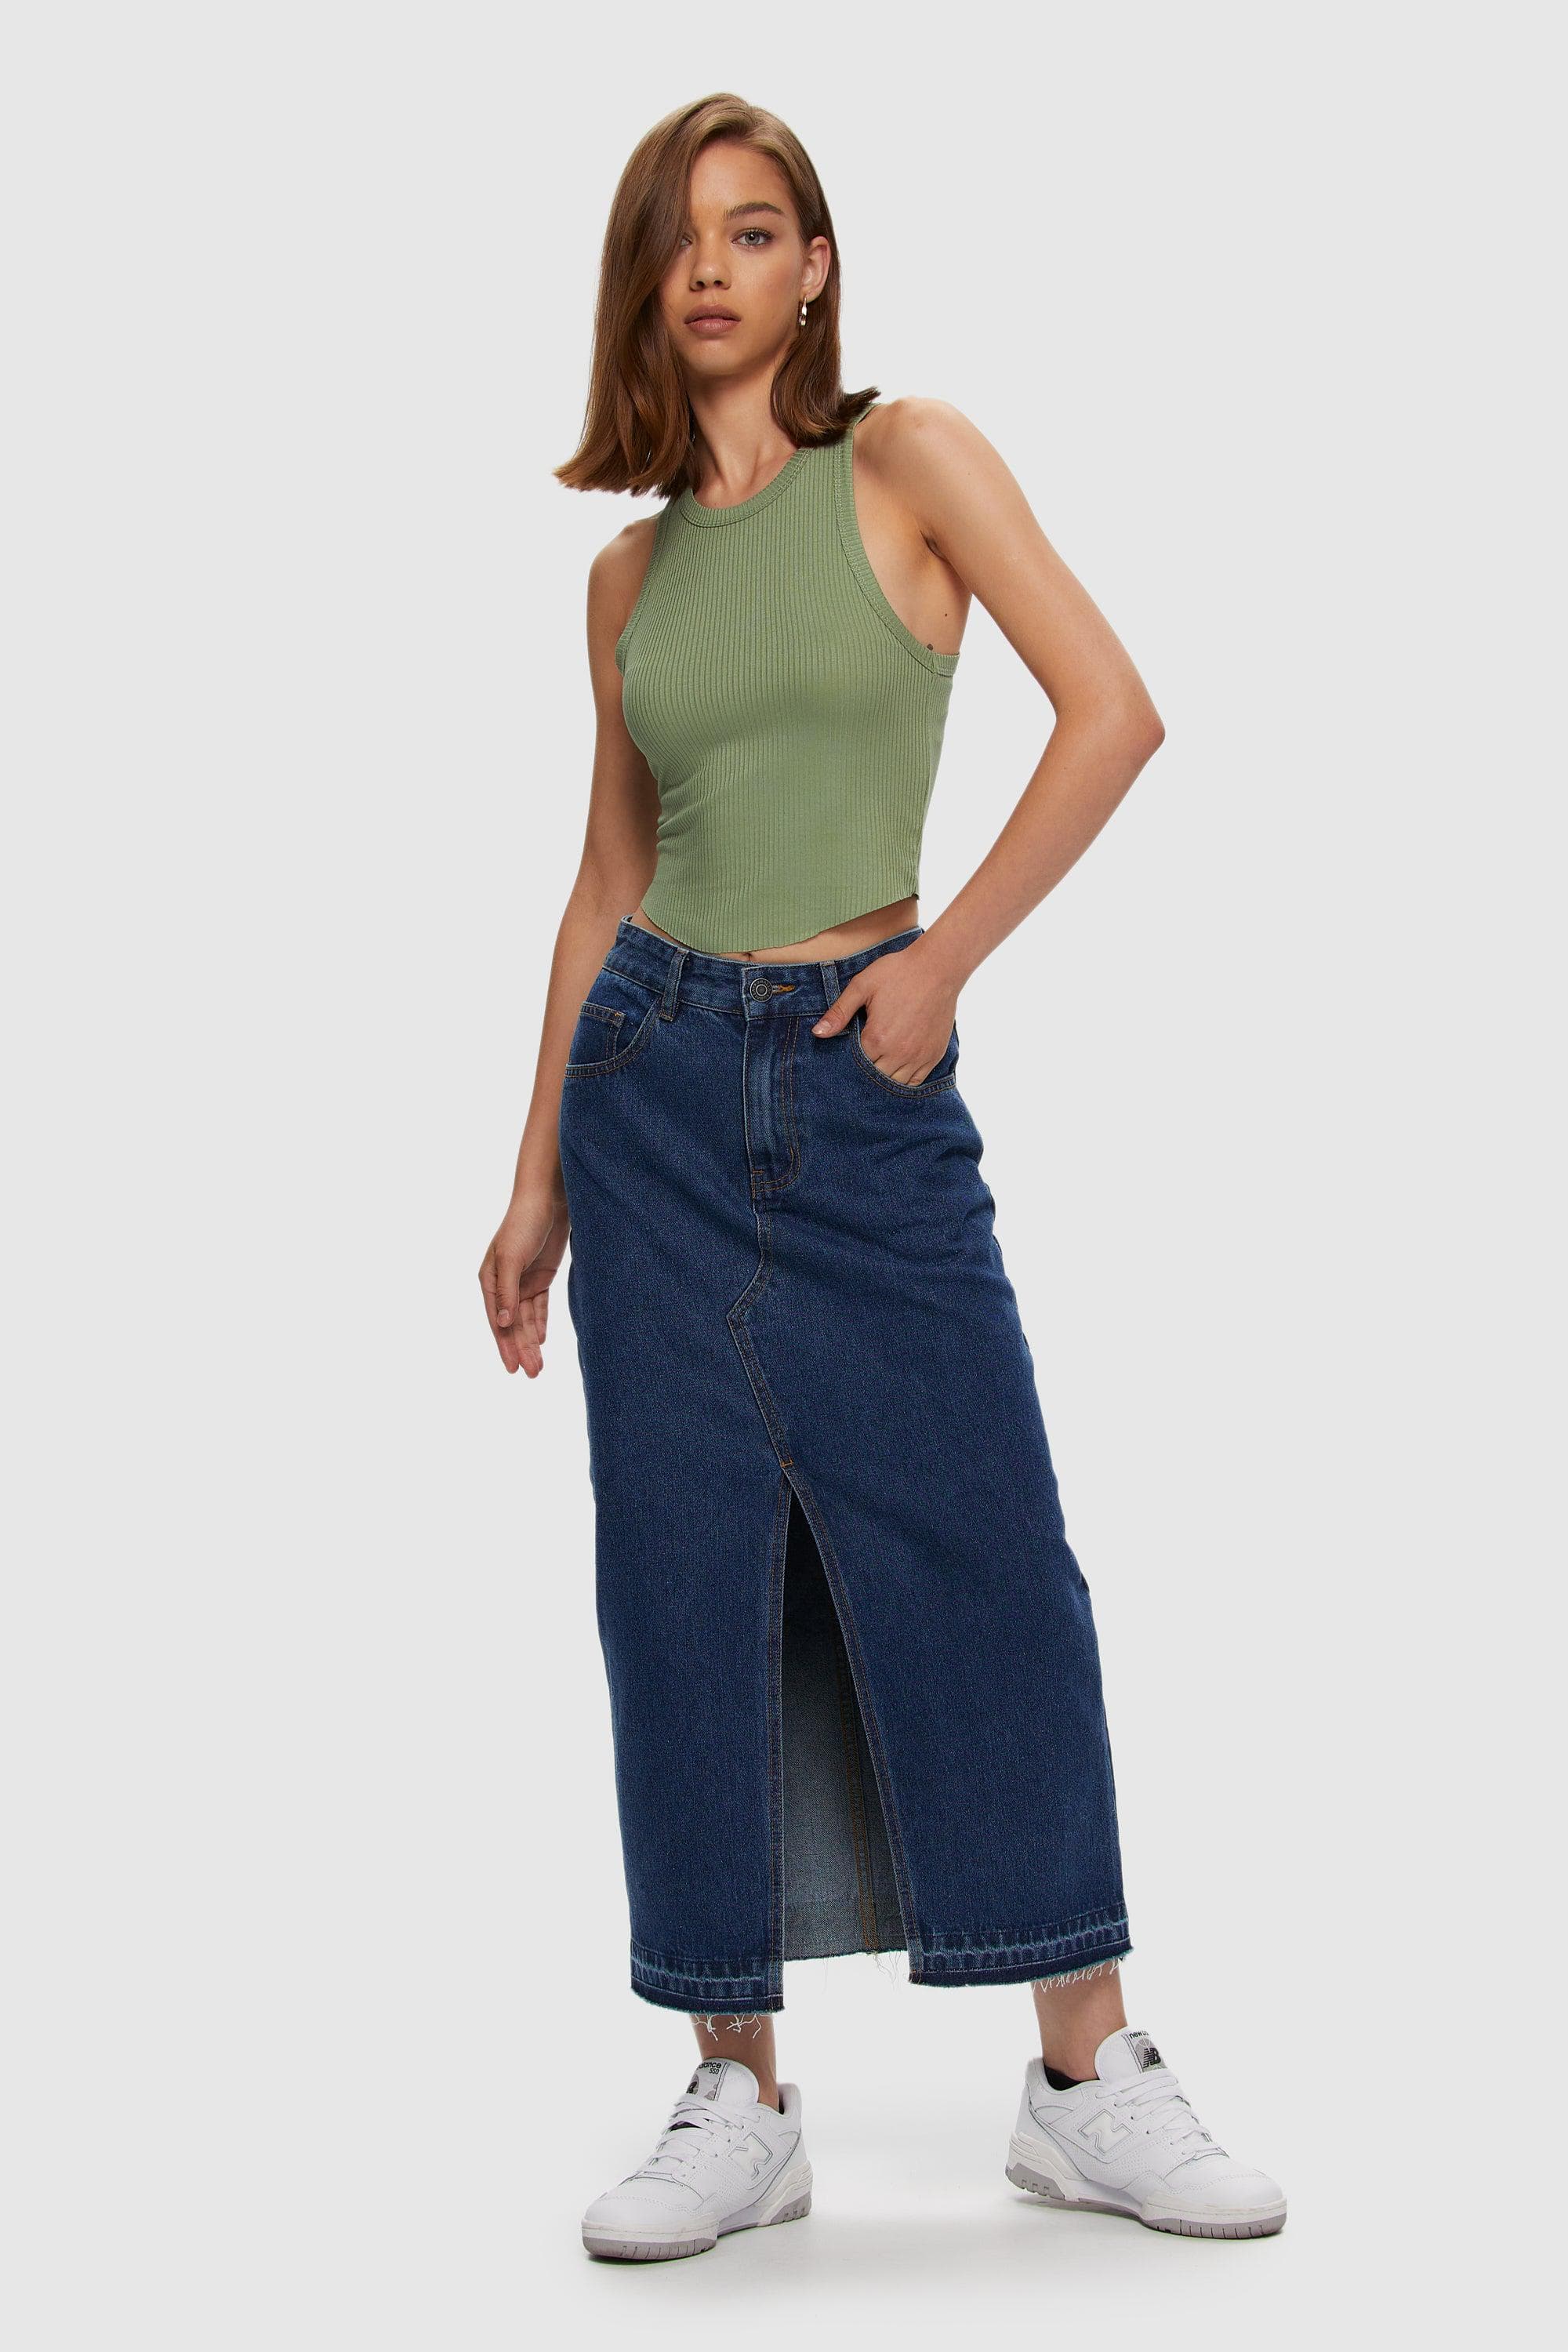 Buy Nuon by Westside Blue Denim Skirt for Online @ Tata CLiQ